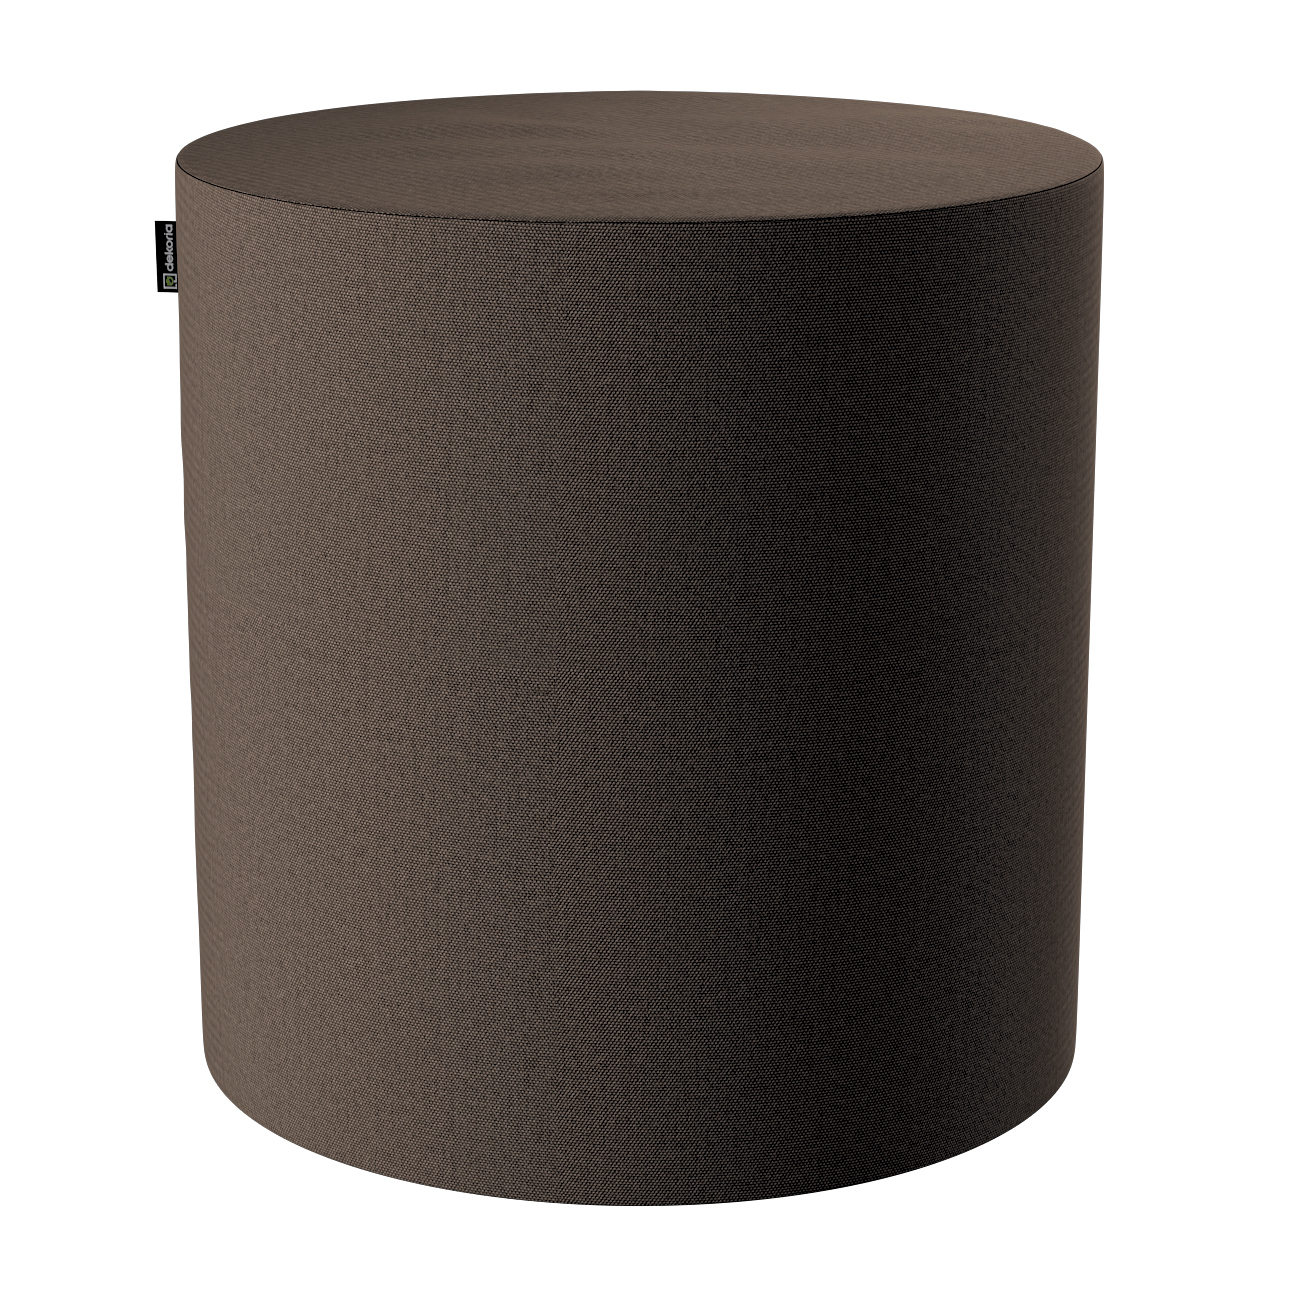 Pouf Barrel, braun, ø40 cm x 40 cm, Etna (705-08) günstig online kaufen